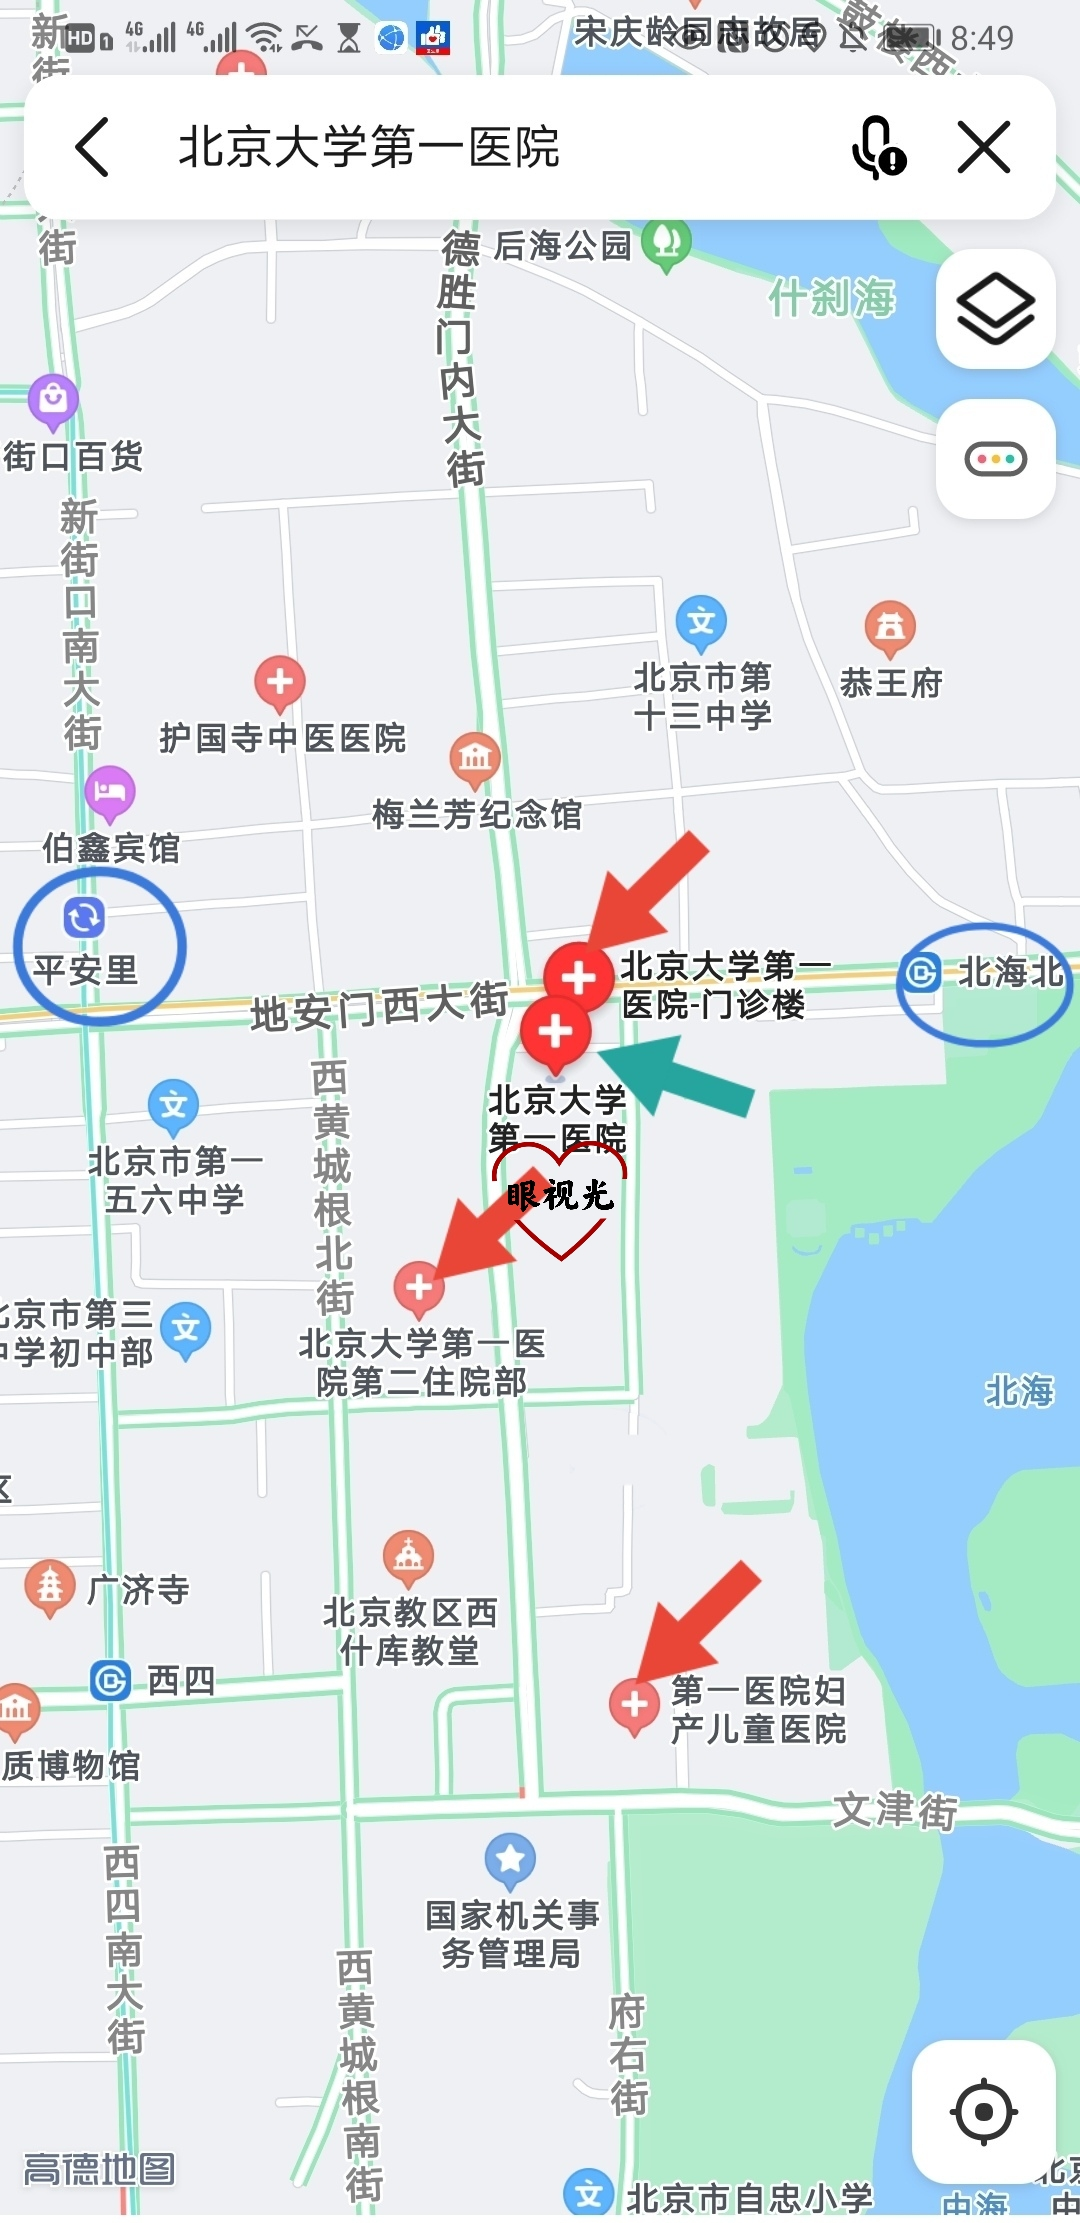 关于北京大学第一医院号贩子挂号,安全快速有效的信息